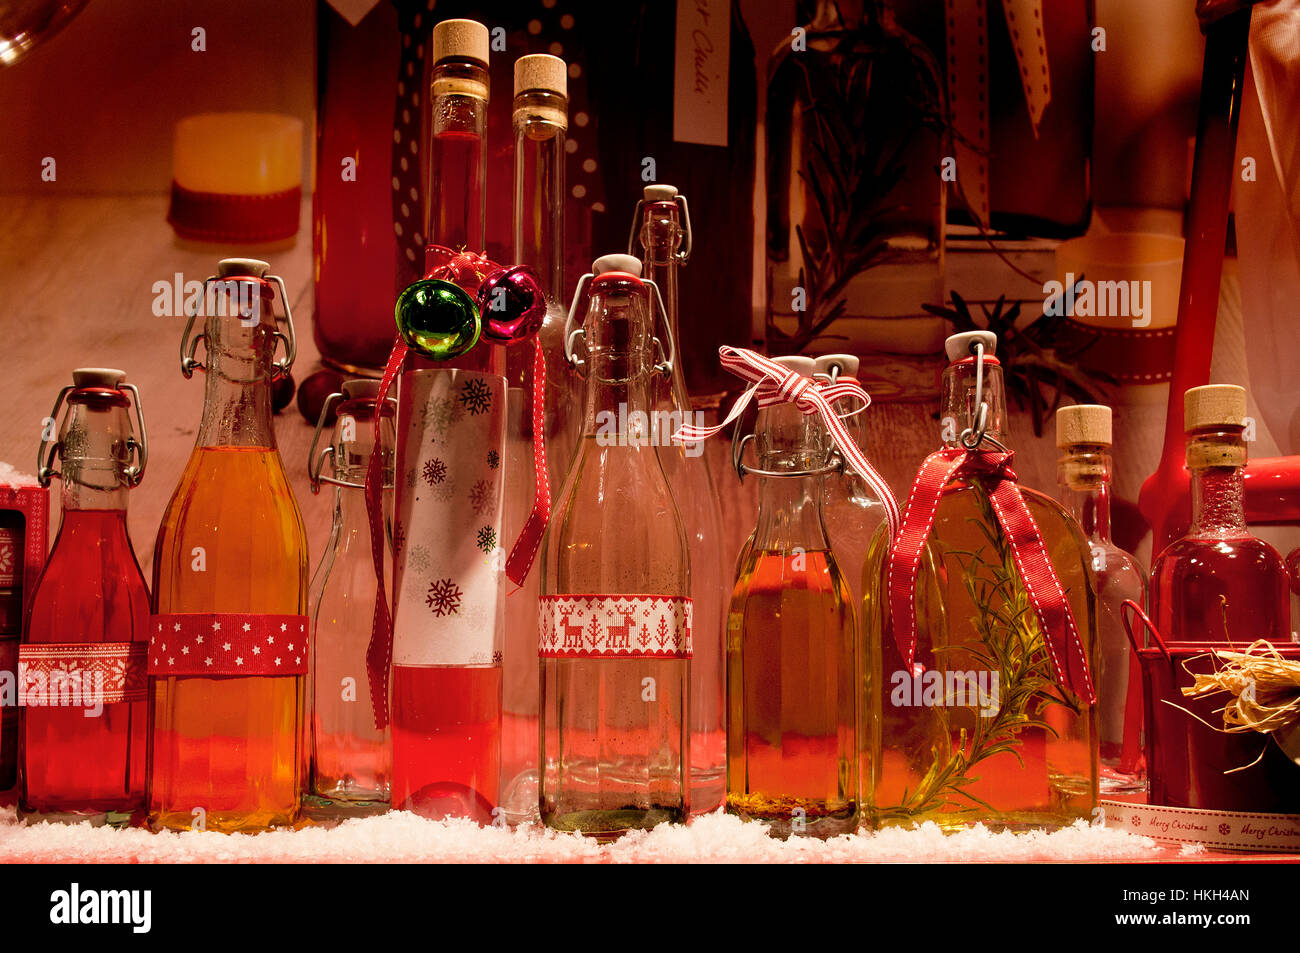 Botellas de aceites de cocina Lakeland Mostrar ventana de Navidad Foto de stock